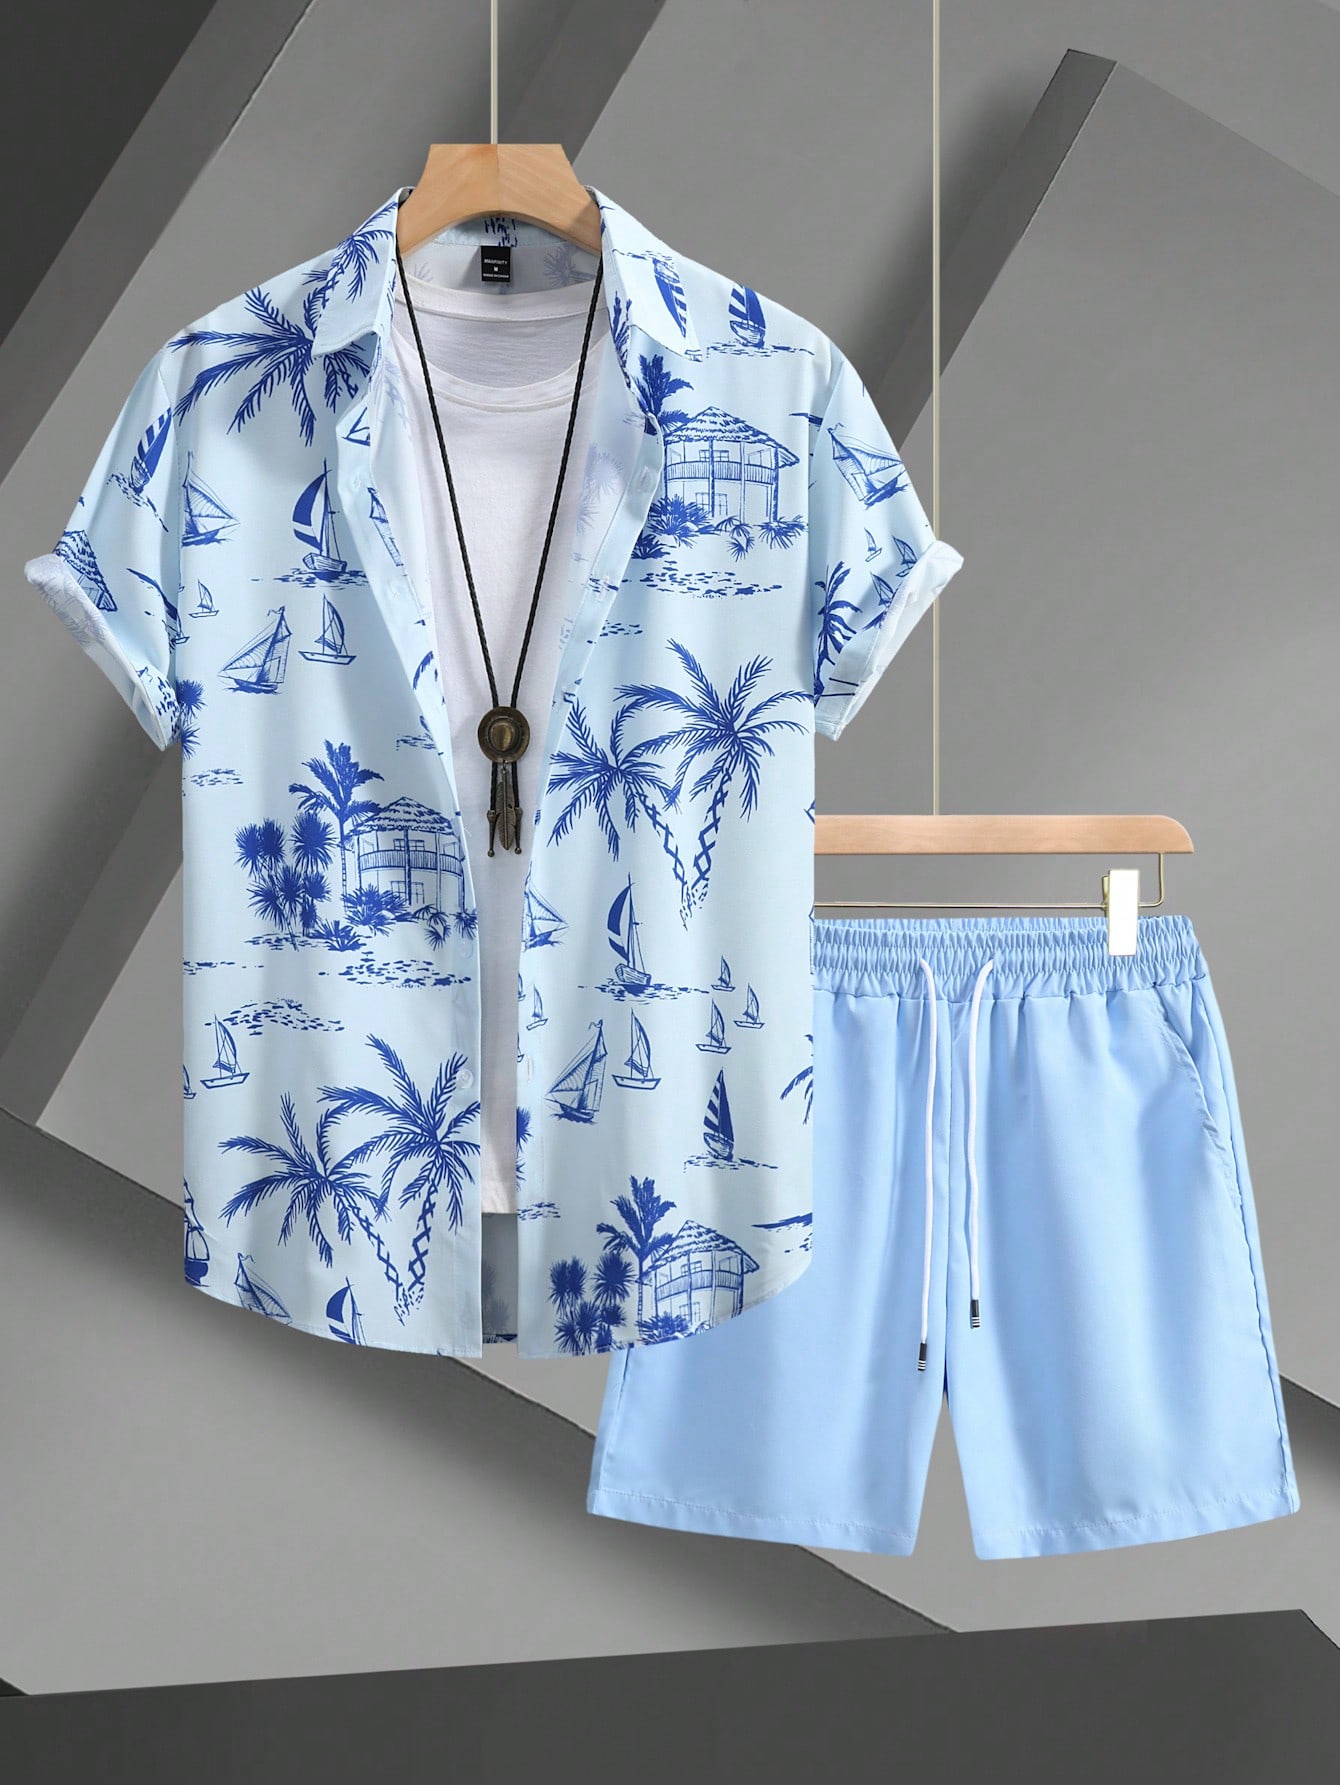 Мужская рубашка с короткими рукавами и принтом кокосовой пальмы Manfinity RSRT, голубые